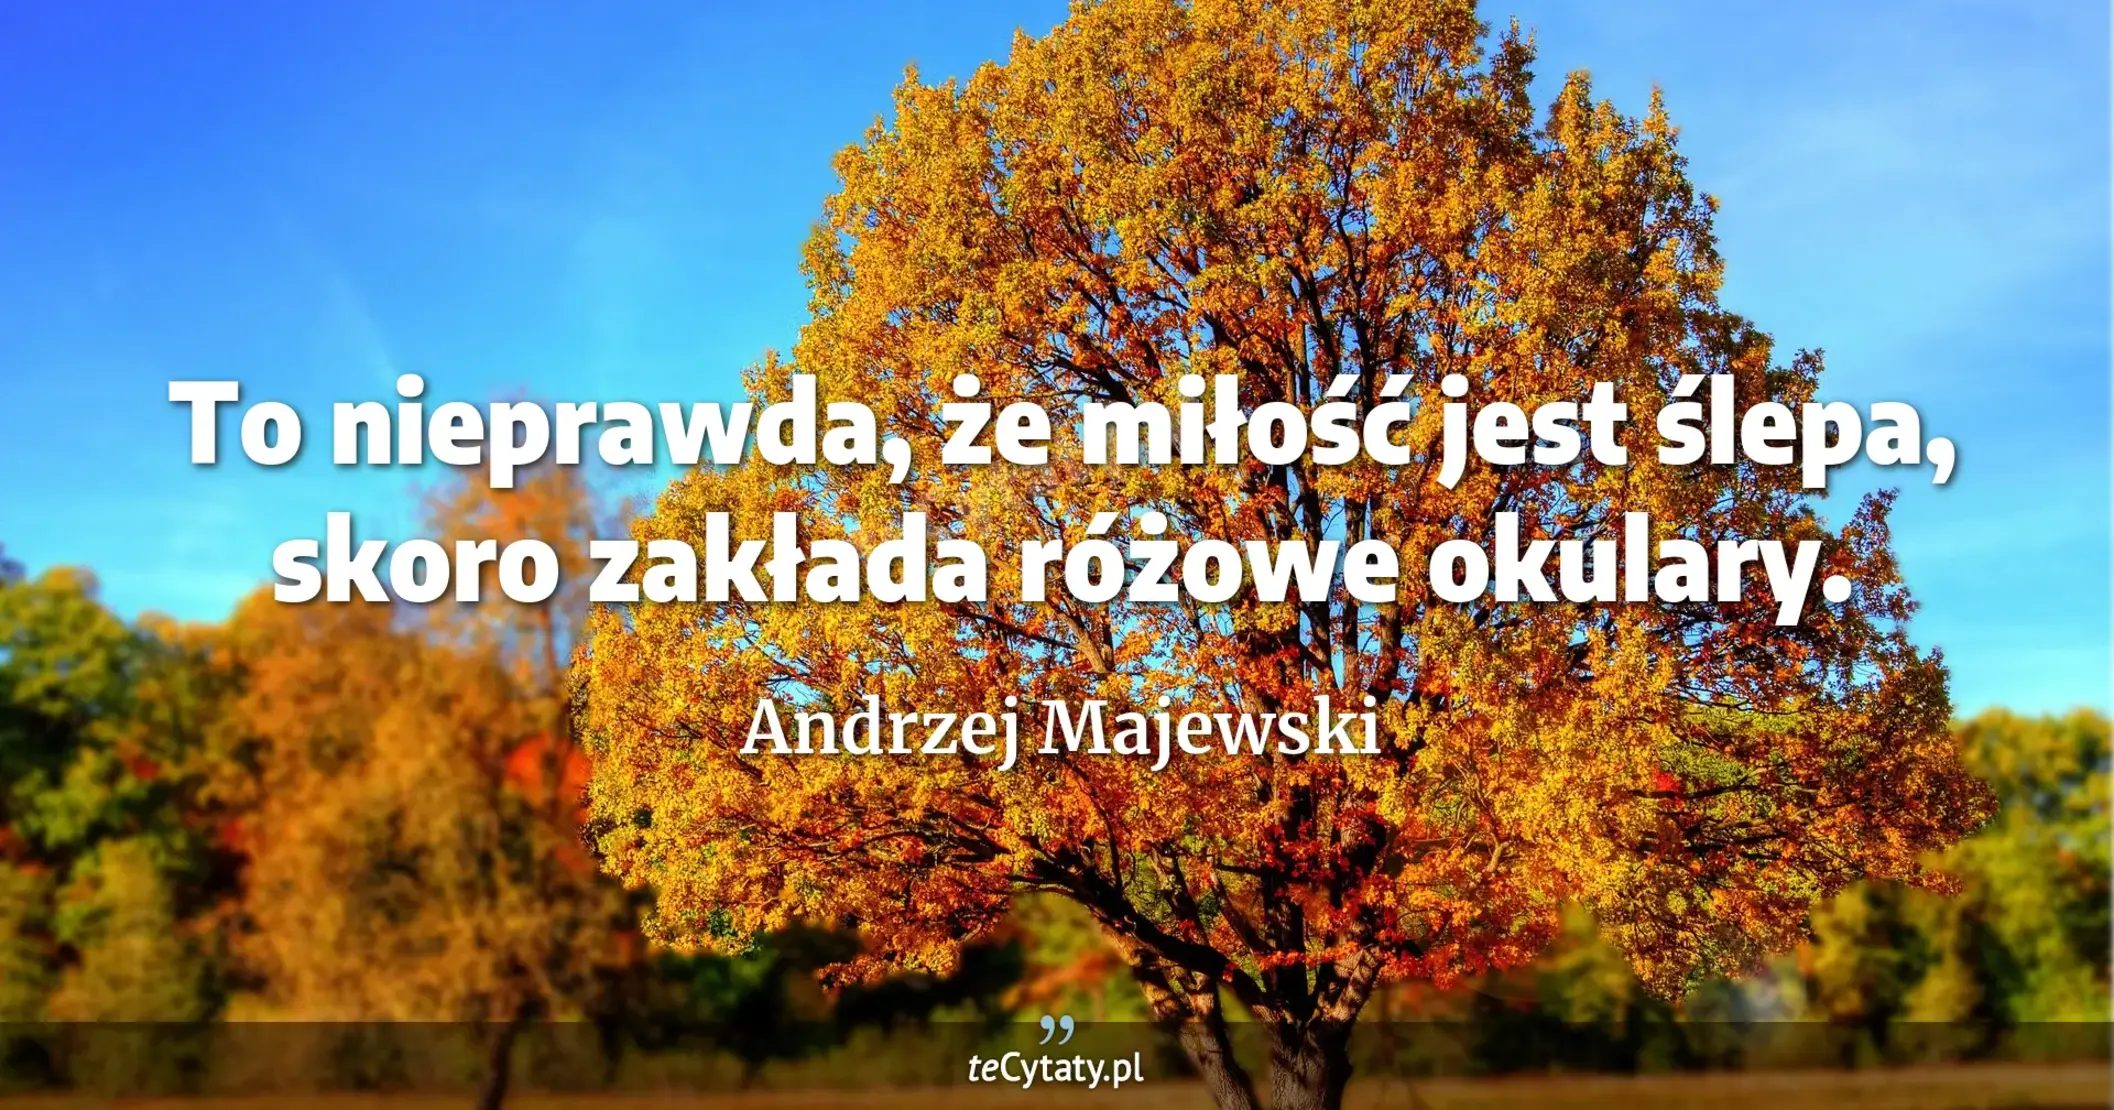 To nieprawda, że miłość jest ślepa, skoro zakłada różowe okulary. - Andrzej Majewski